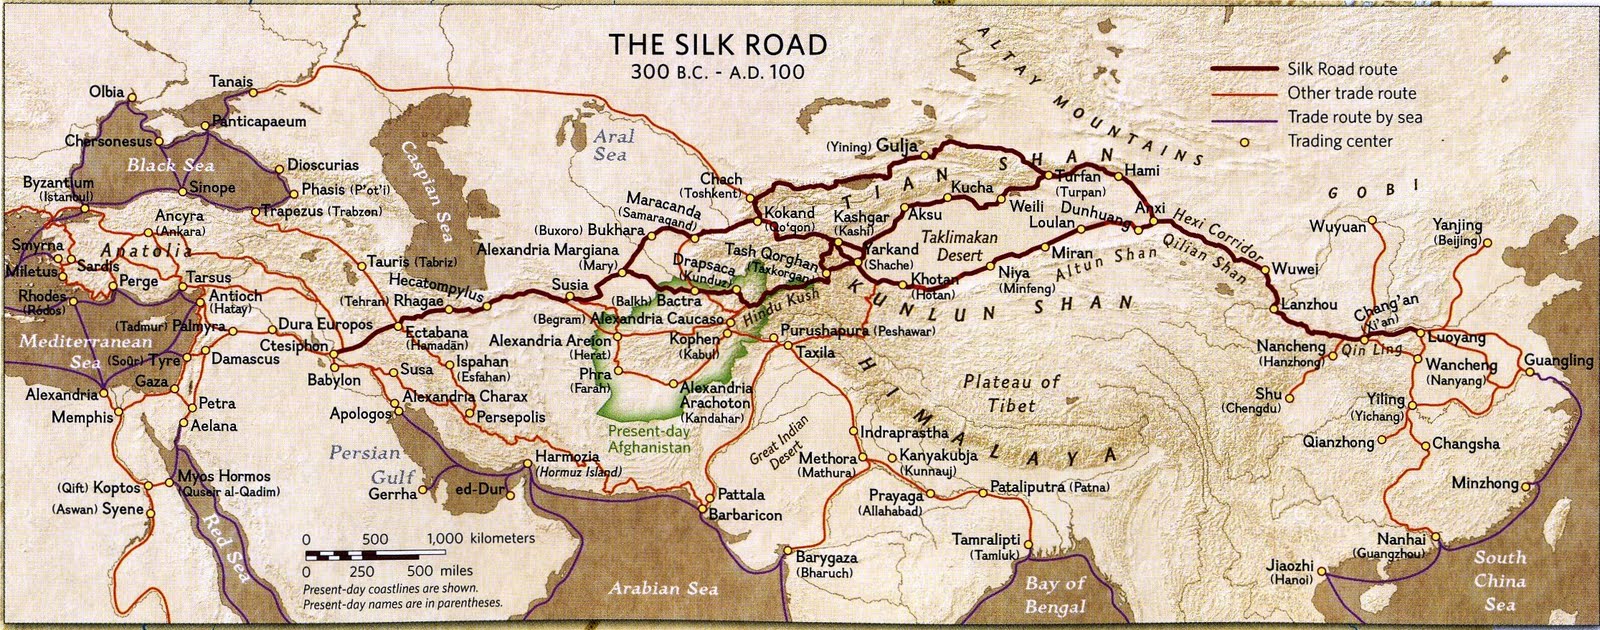 Silk-Road-Map-Afghanistan-show-Hiebert-PENN.MUSEUM.jpg